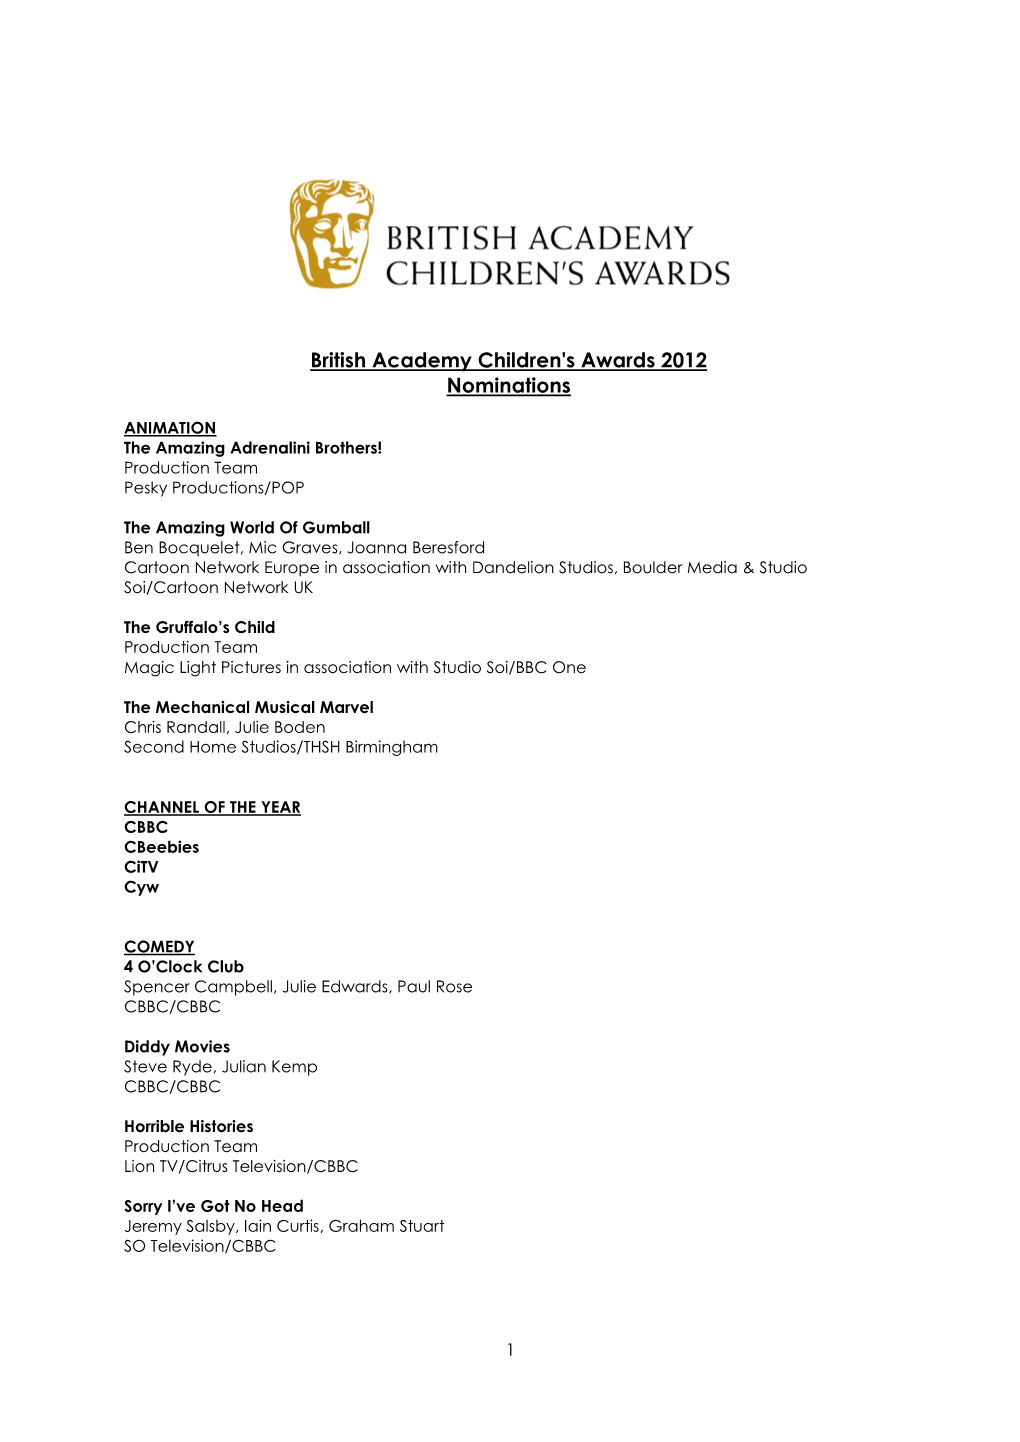 British Academy Children's Awards 2012 Nominations